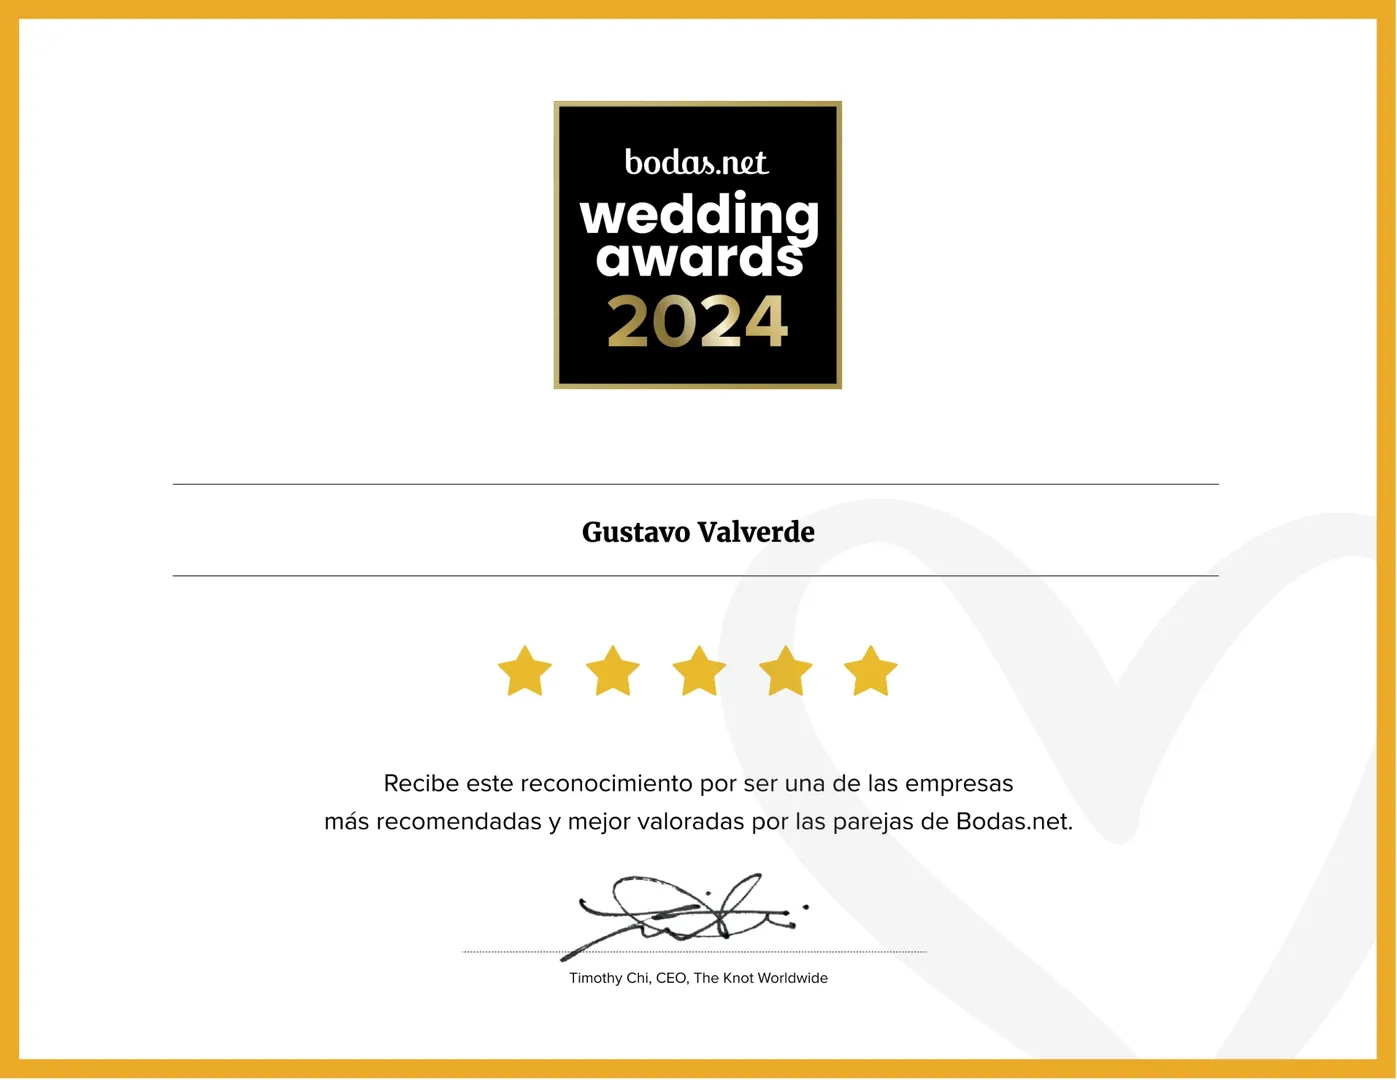 Gustavo Valverde: Un Legado de Excelencia Reconocido con el Premio Wedding Awards 2024